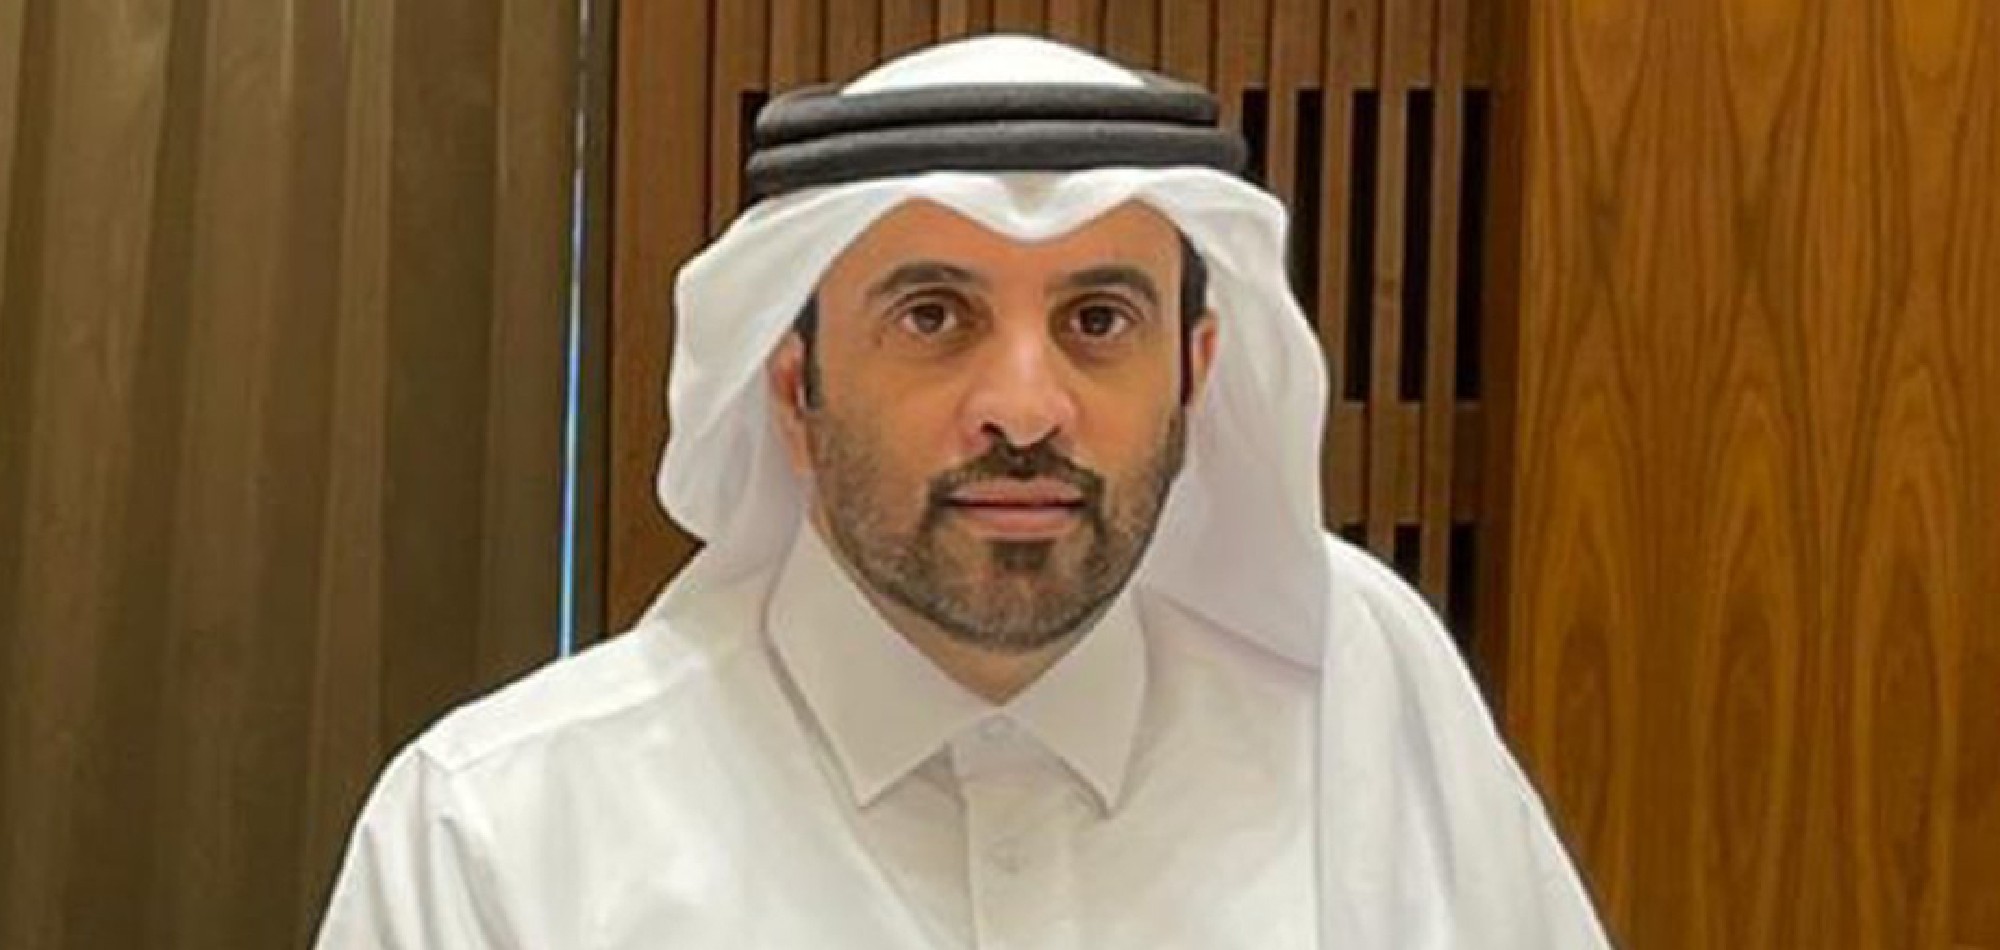 Al Fadala elected as President of the Qatar Athletics Federation